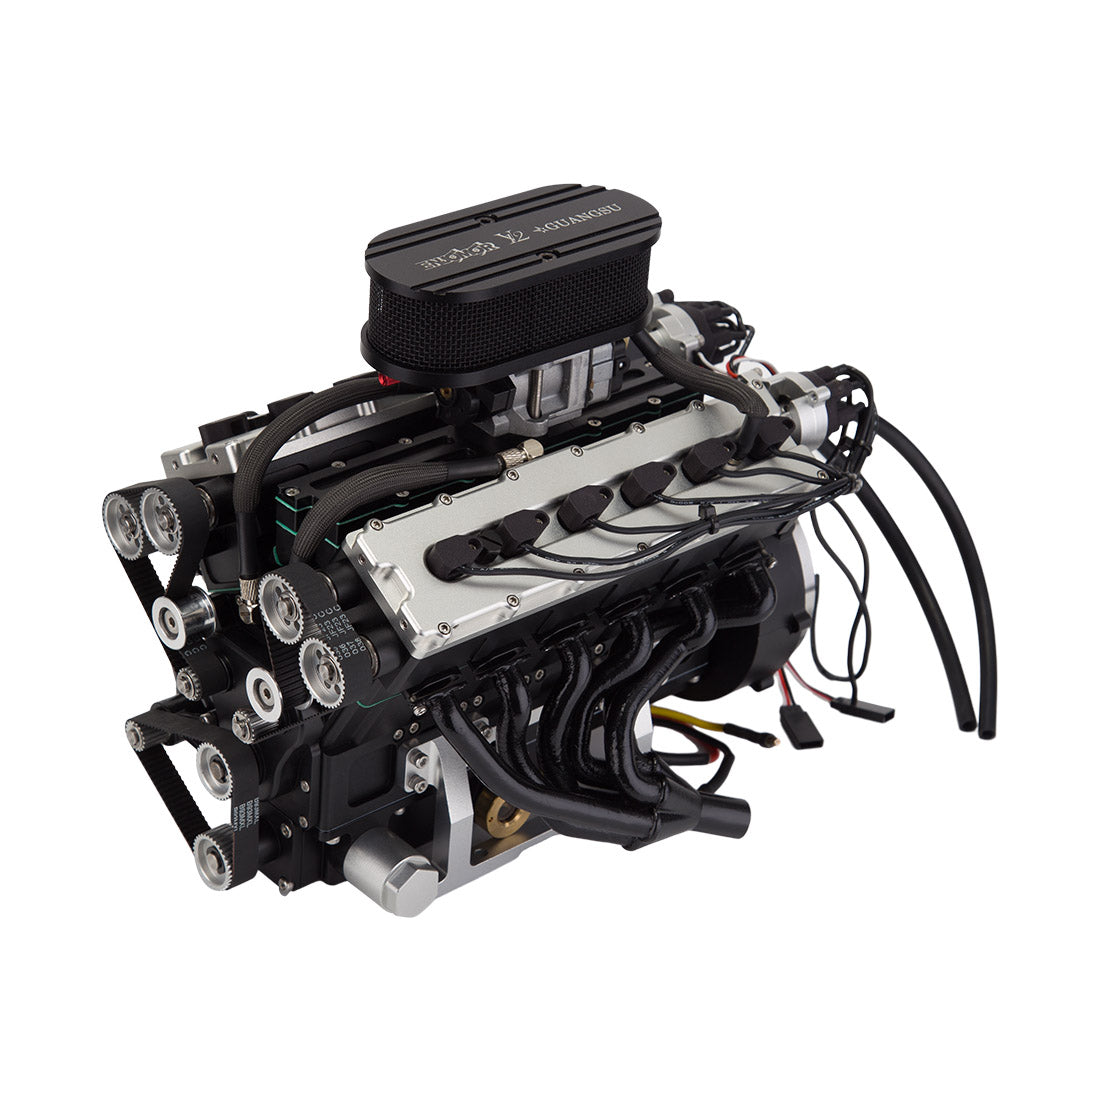 ENJOMOR V12 GS-V12 72CC Large Scale V12 DOHC Four-Stroke Gasoline Engine Model Water-Cooled Electric Start